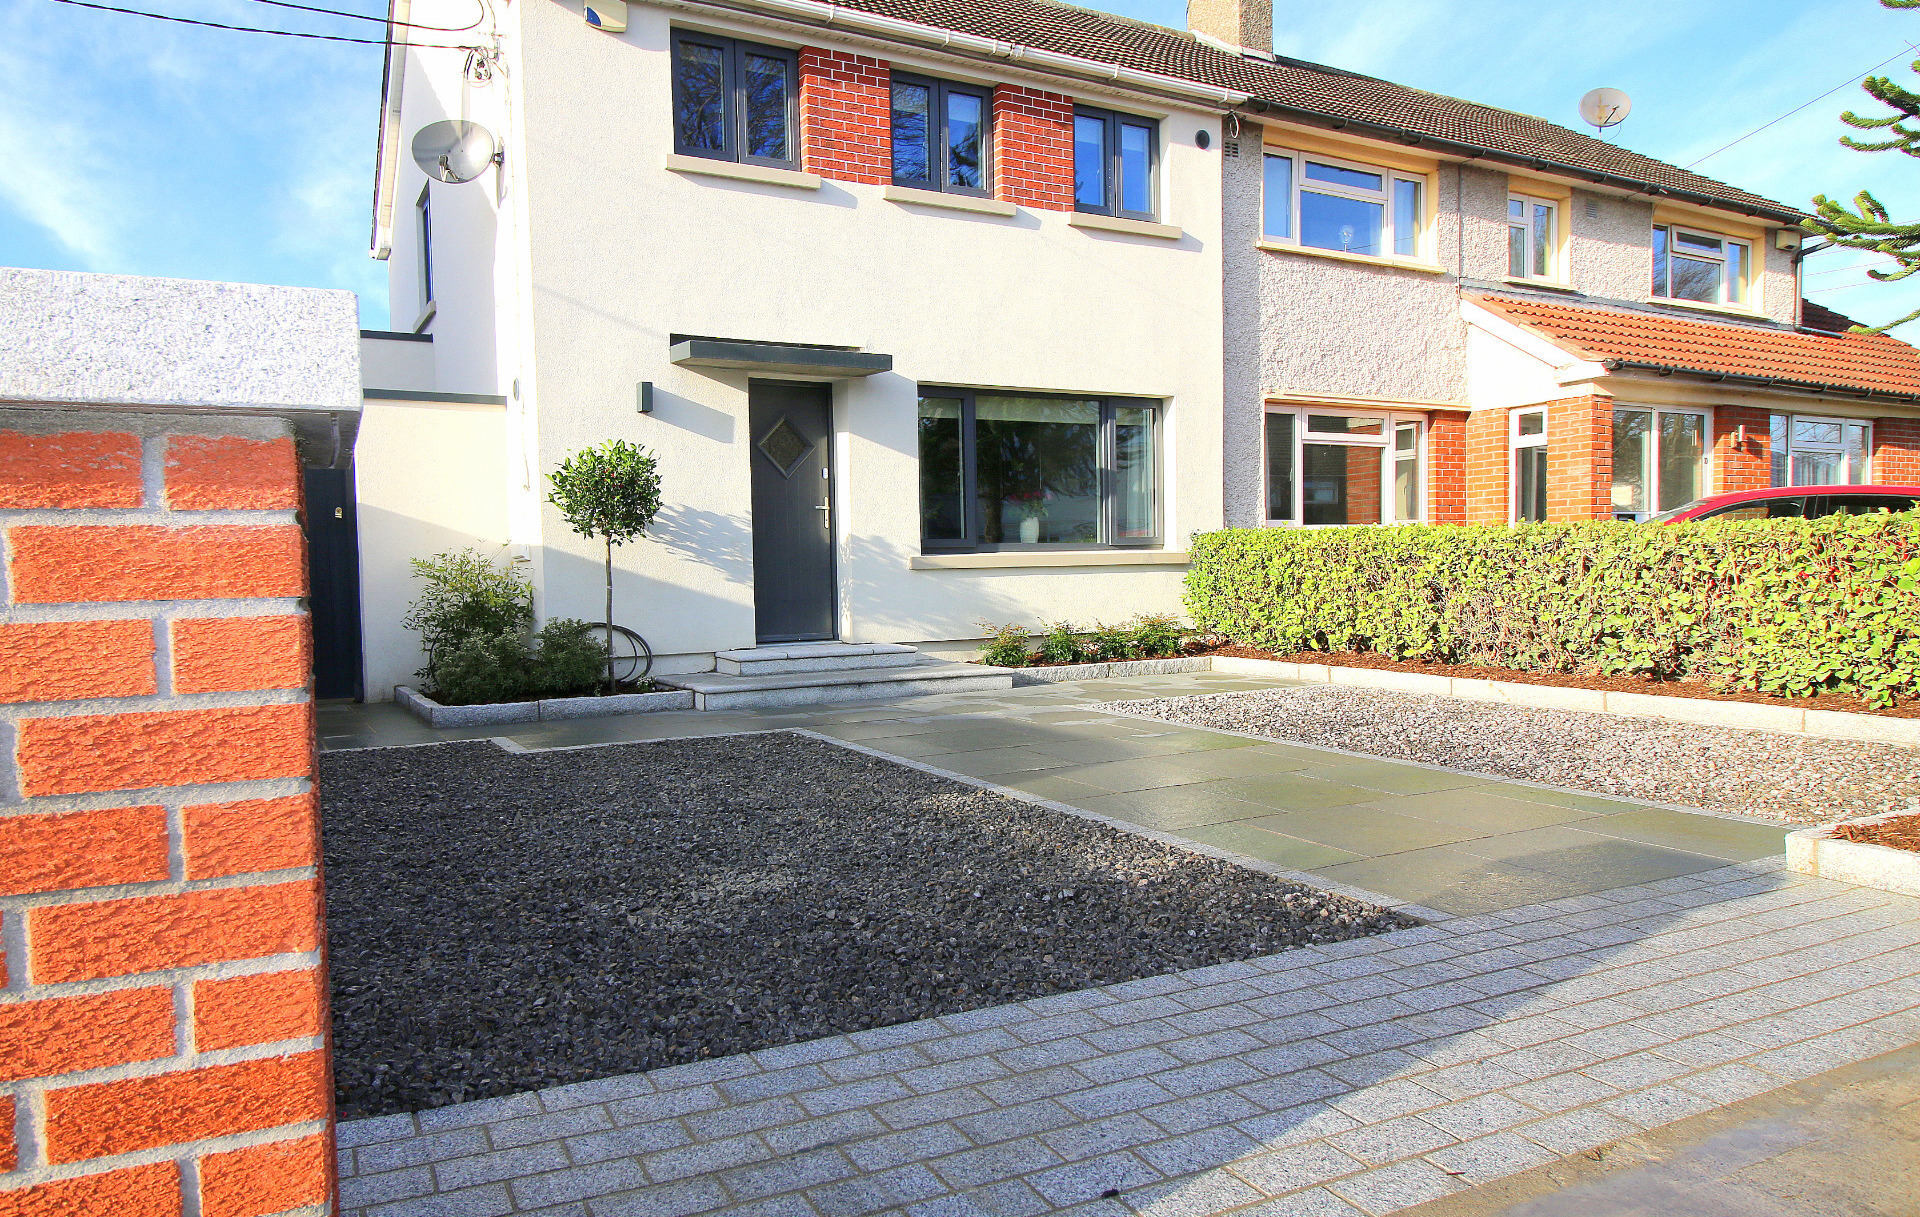 Distinctive Driveways Designed & installed in Dublin| Owen Chubb Garden Design, Tel 087-2306 128